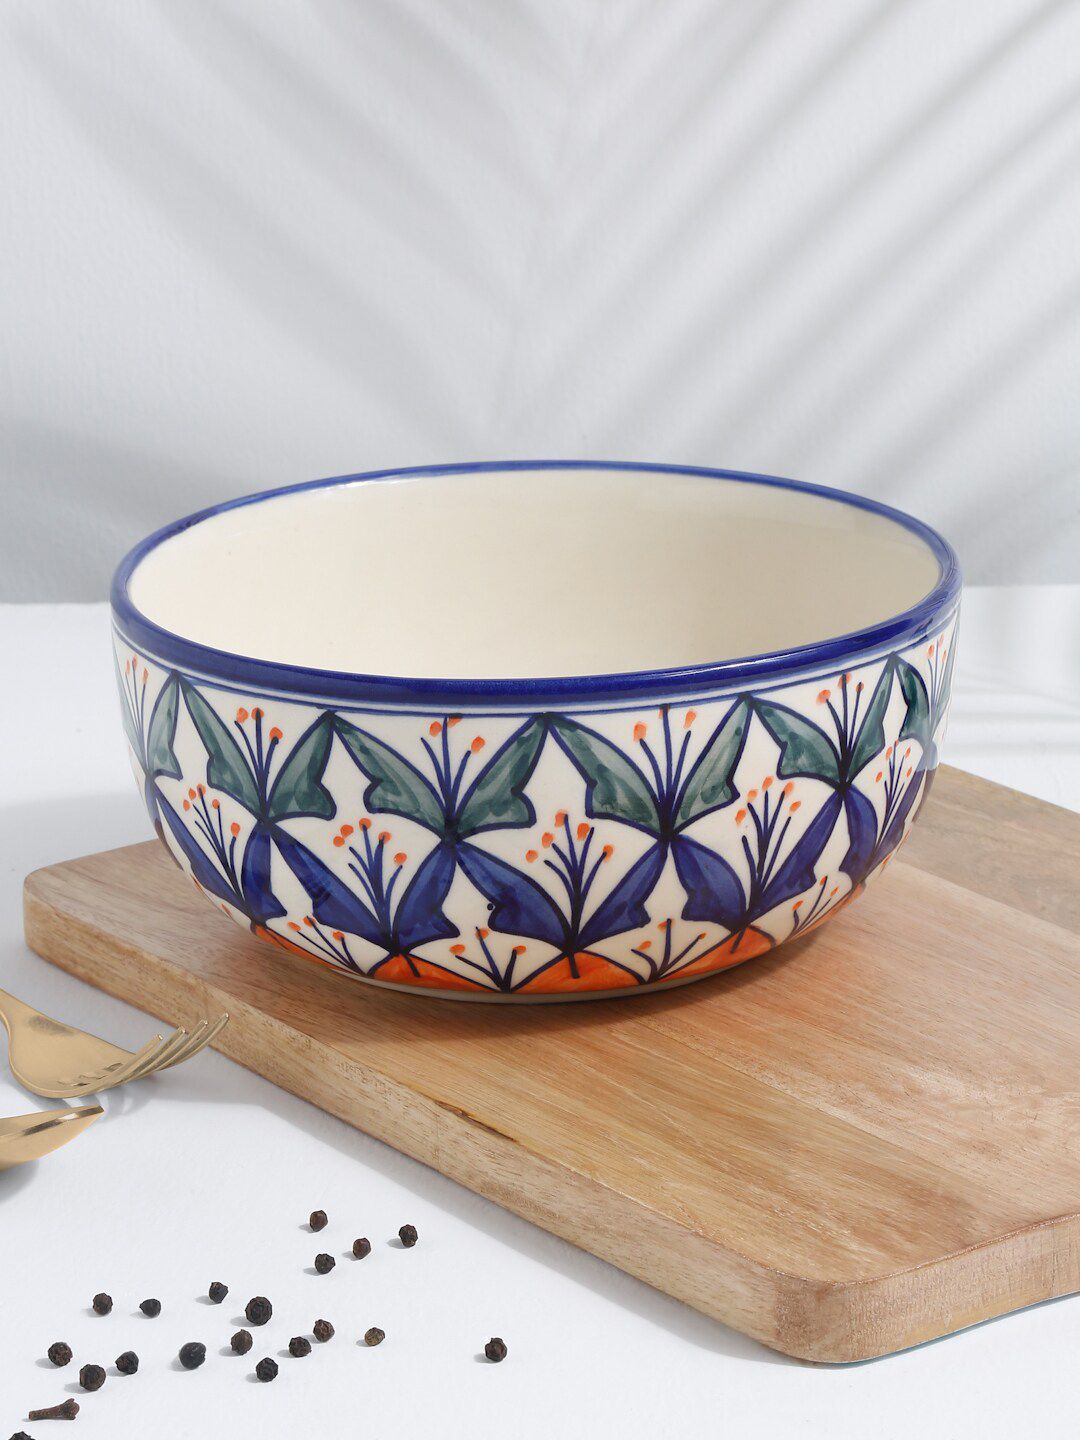 EK BY EKTA KAPOOR Off White Printed Ceramic Glazed Serving Bowl Price in India